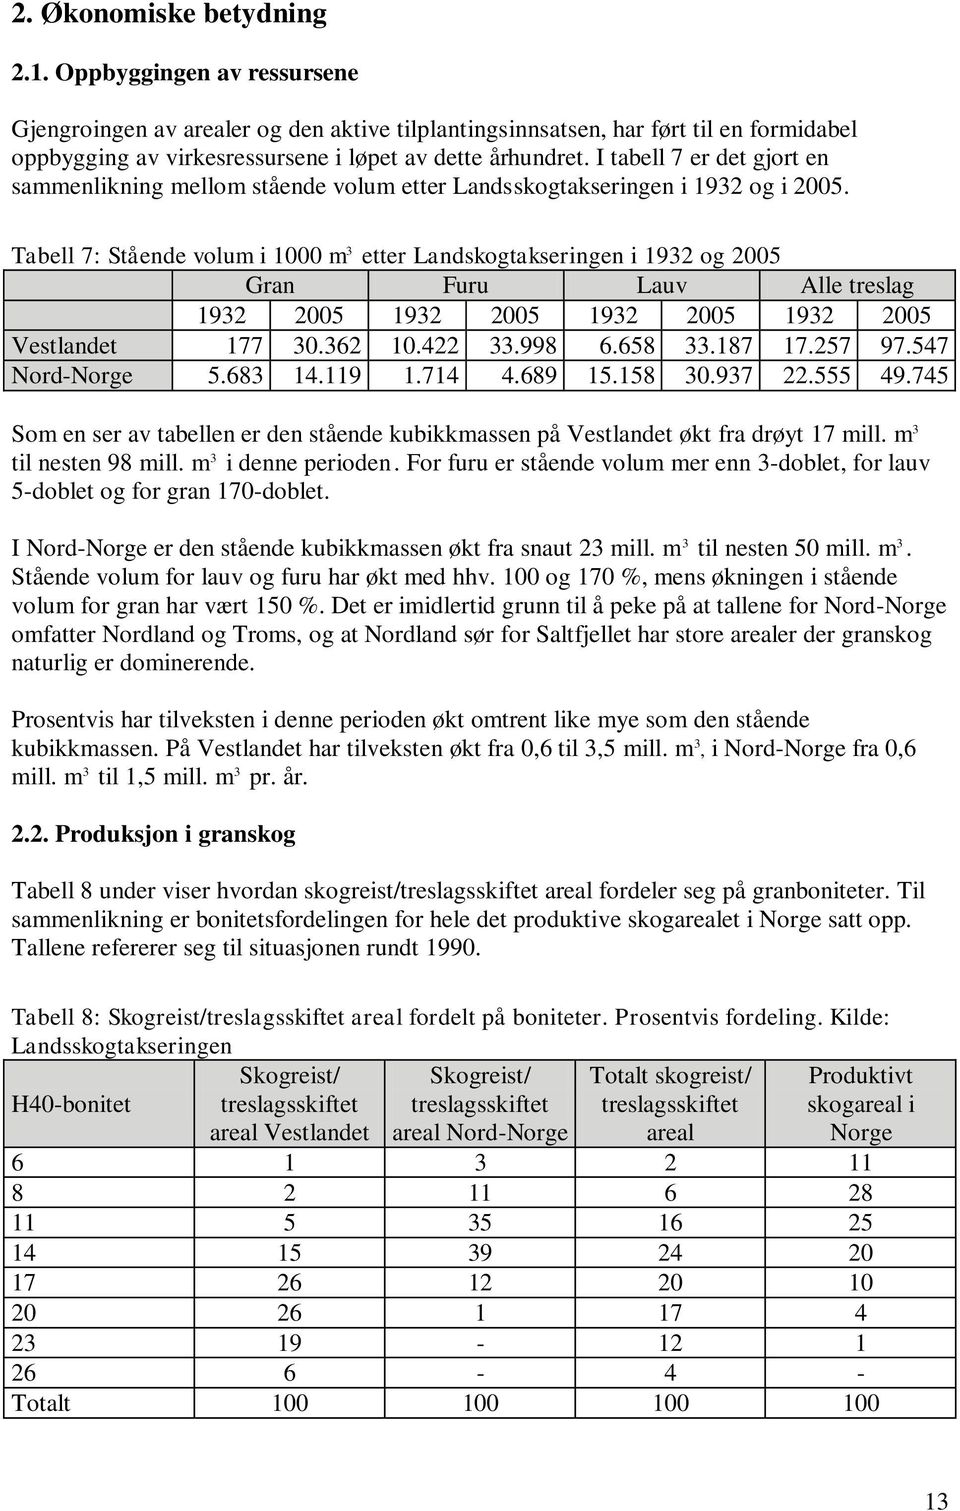 I tabell 7 er det gjort en sammenlikning mellom stående volum etter Landsskogtakseringen i 1932 og i 2005.